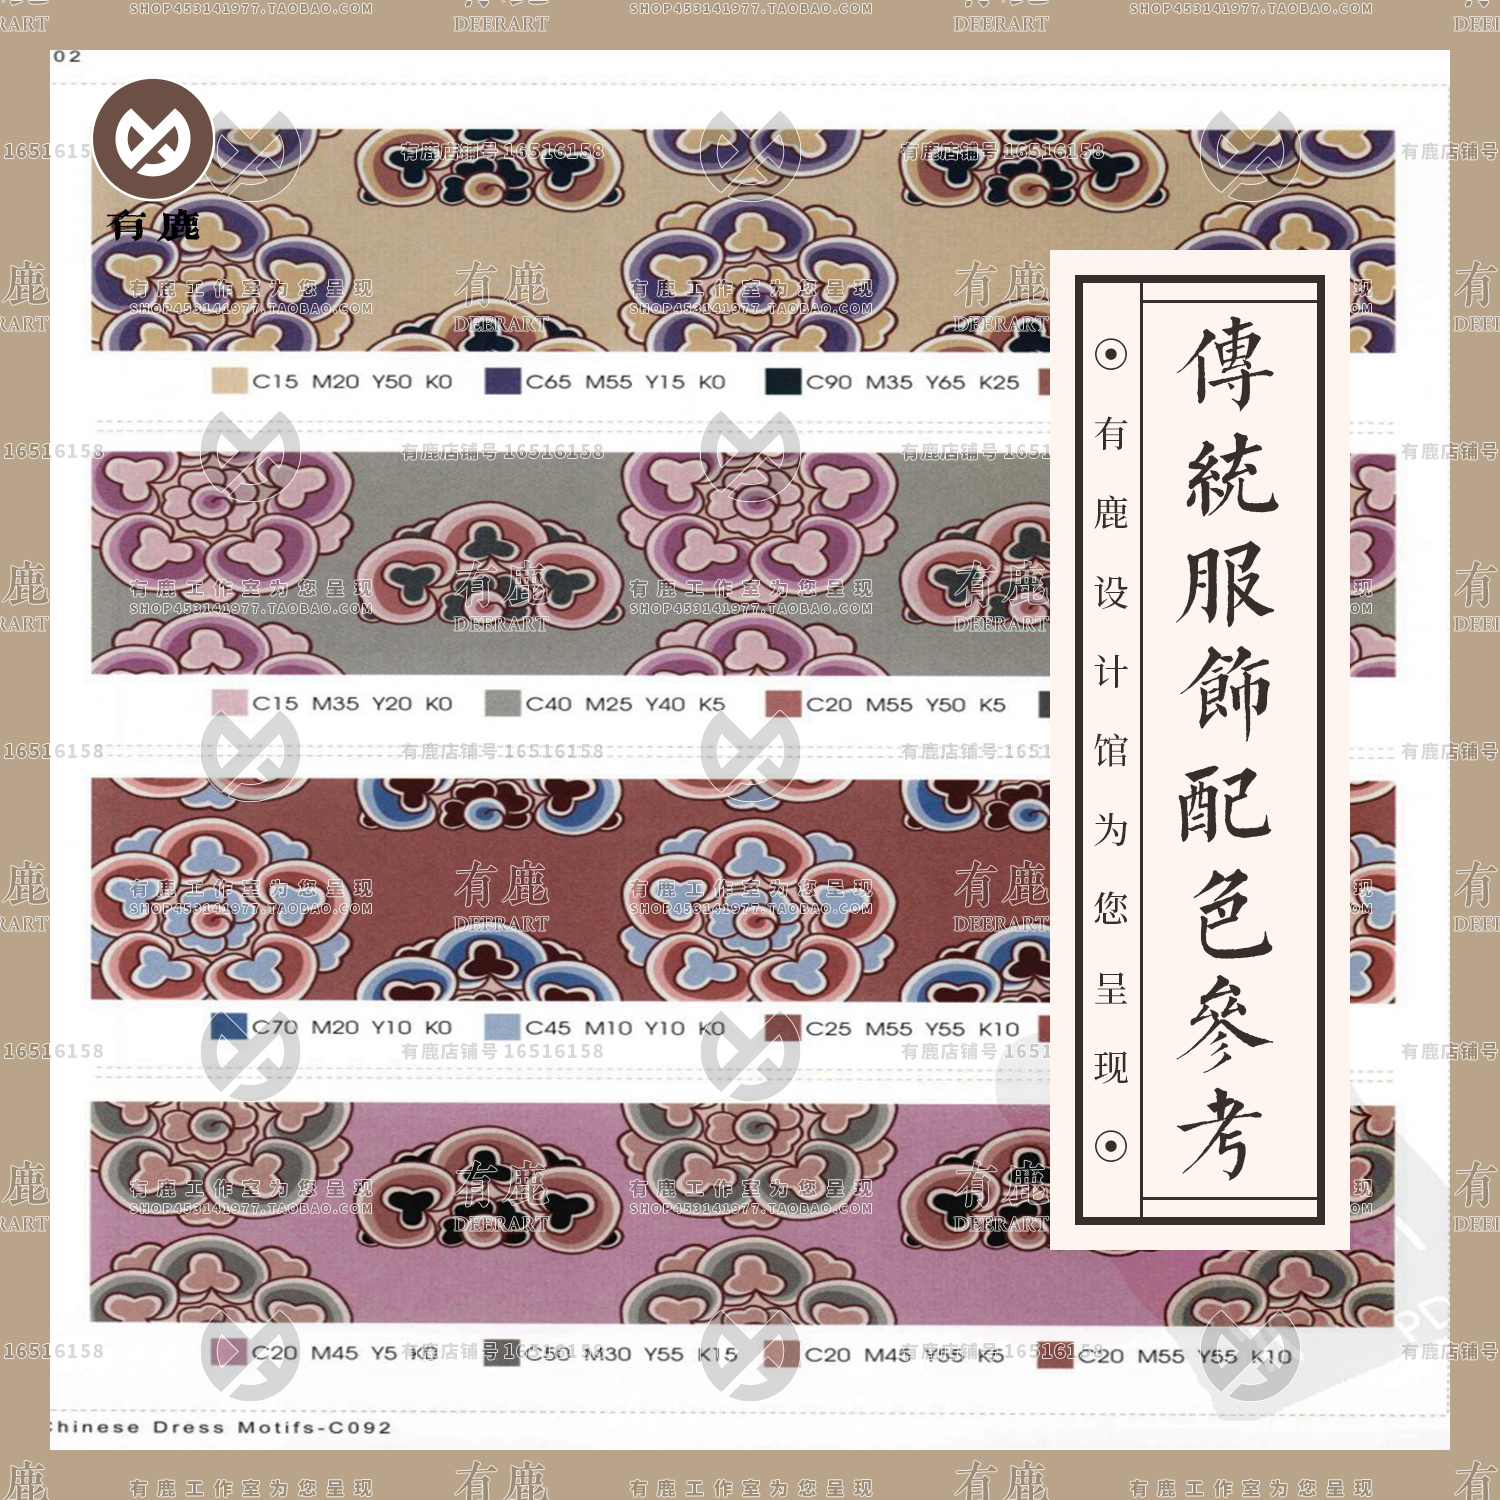 中国传统古代明代唐代服装织锦服饰图案配色JPG参考图片色彩素材